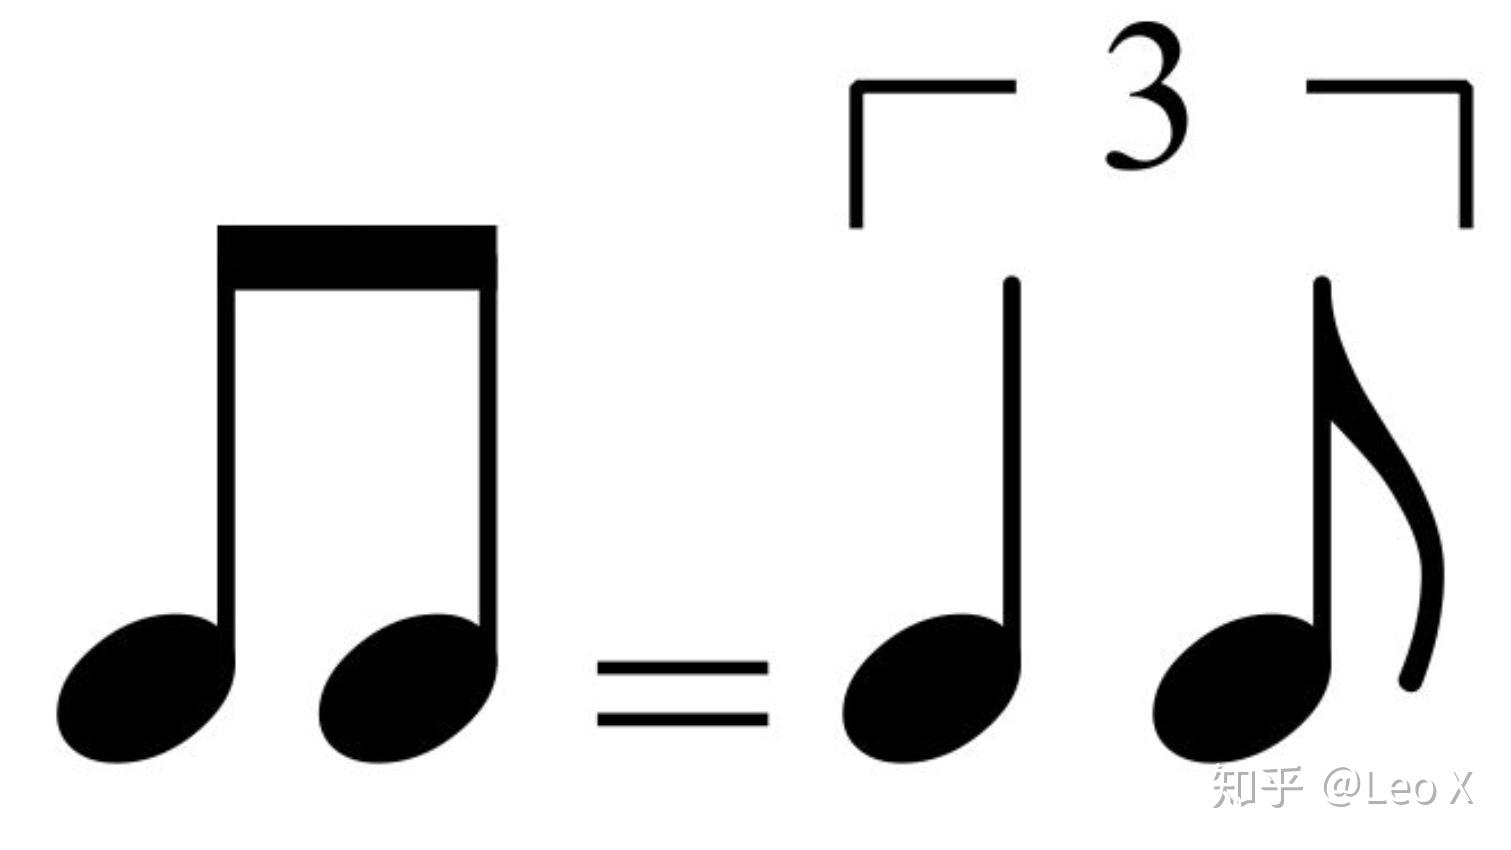 请问音乐的节拍,3/4和3/8有实质的区别吗? 